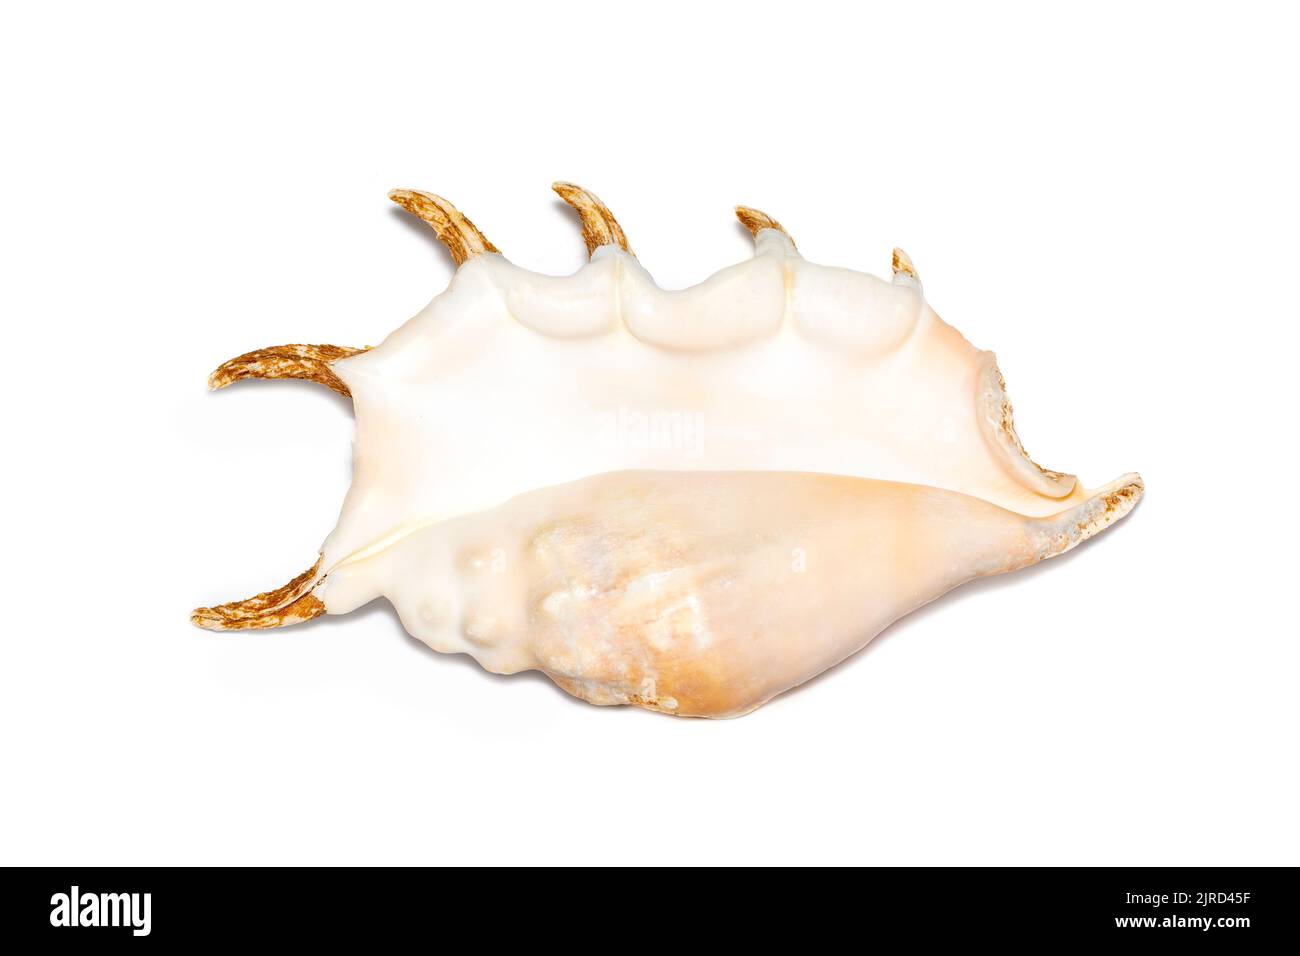 Image de l'araignée conch seashell (Lambis truncata) sur fond blanc. Coquillages. Animaux sous-marins. Banque D'Images